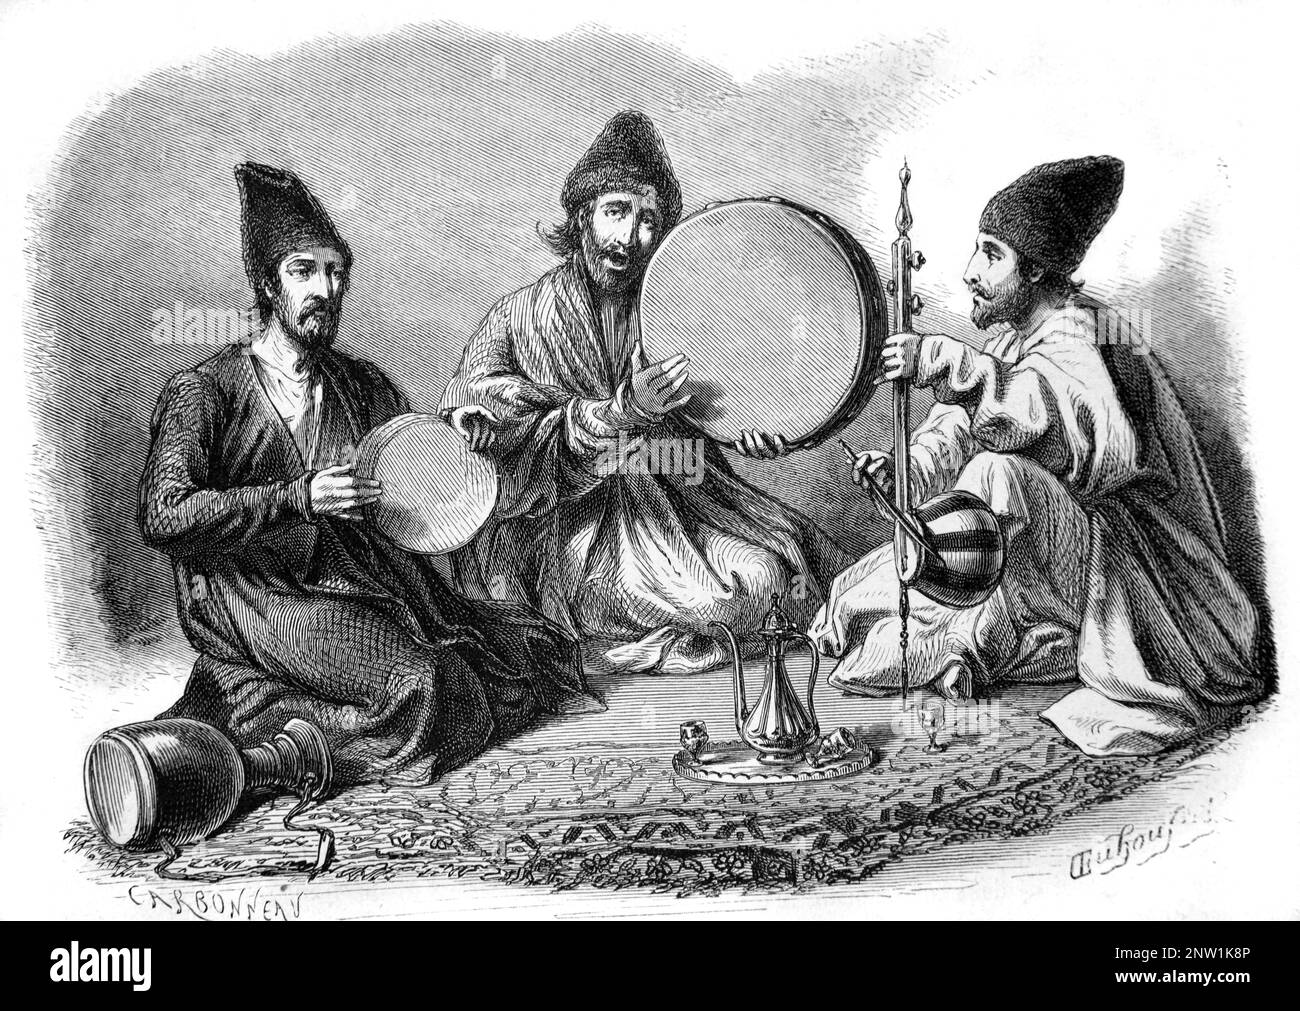 Persische oder iranische Musiker, die traditionelle persische Musikinstrumente wie Kamancheh, Trommeln, DAF und Rahmentrommeln spielen, während sie Tee trinken, Persien oder Iran. Vintage-Gravur oder Abbildung 1862 Stockfoto